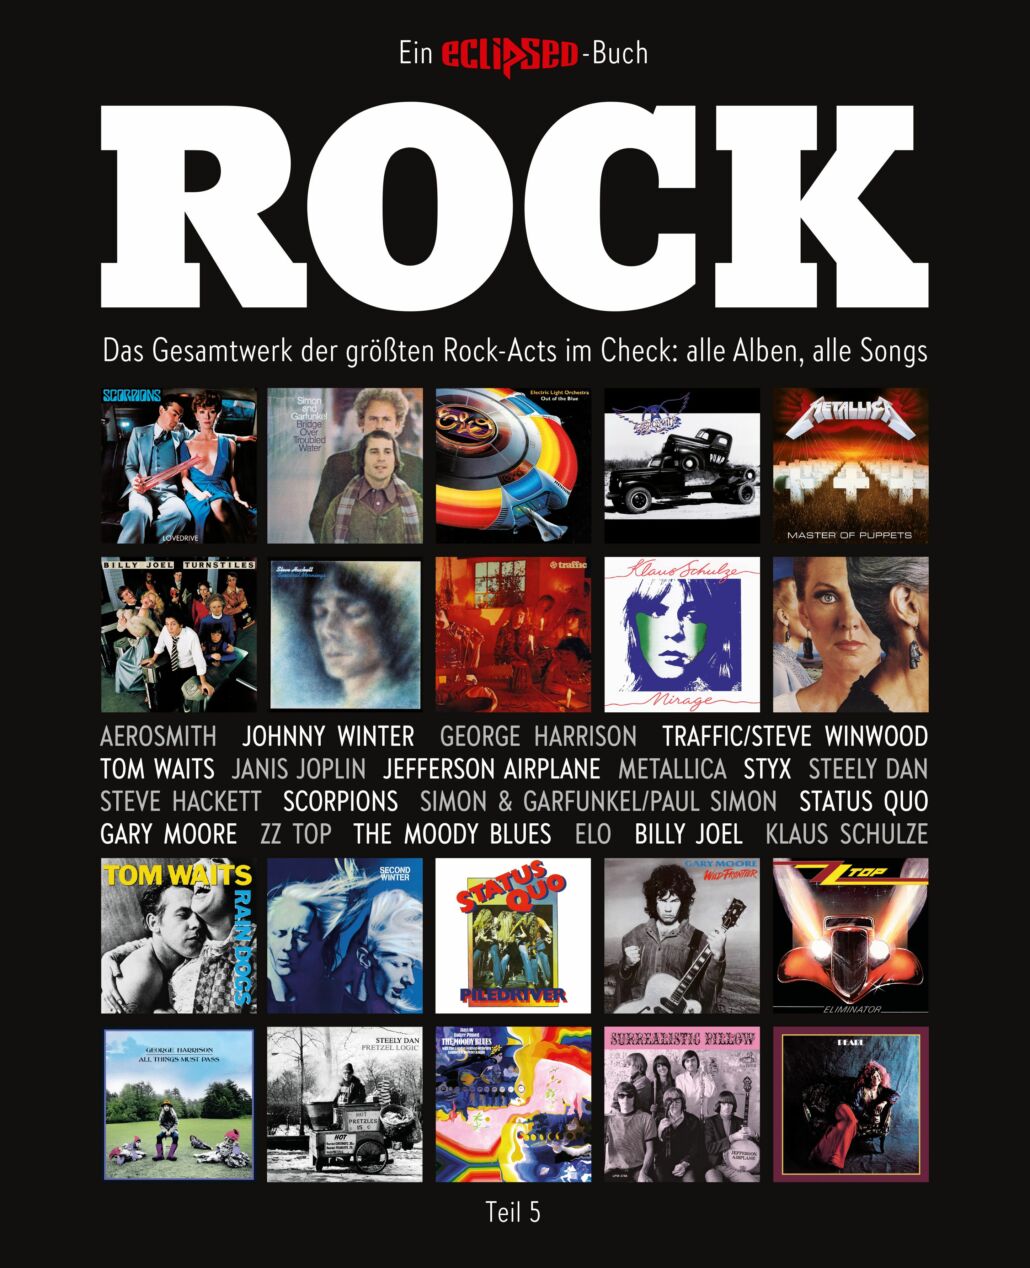 Das Gesamtwerk der größten Rock-Acts im Check: Alle Alben, alle Songs.